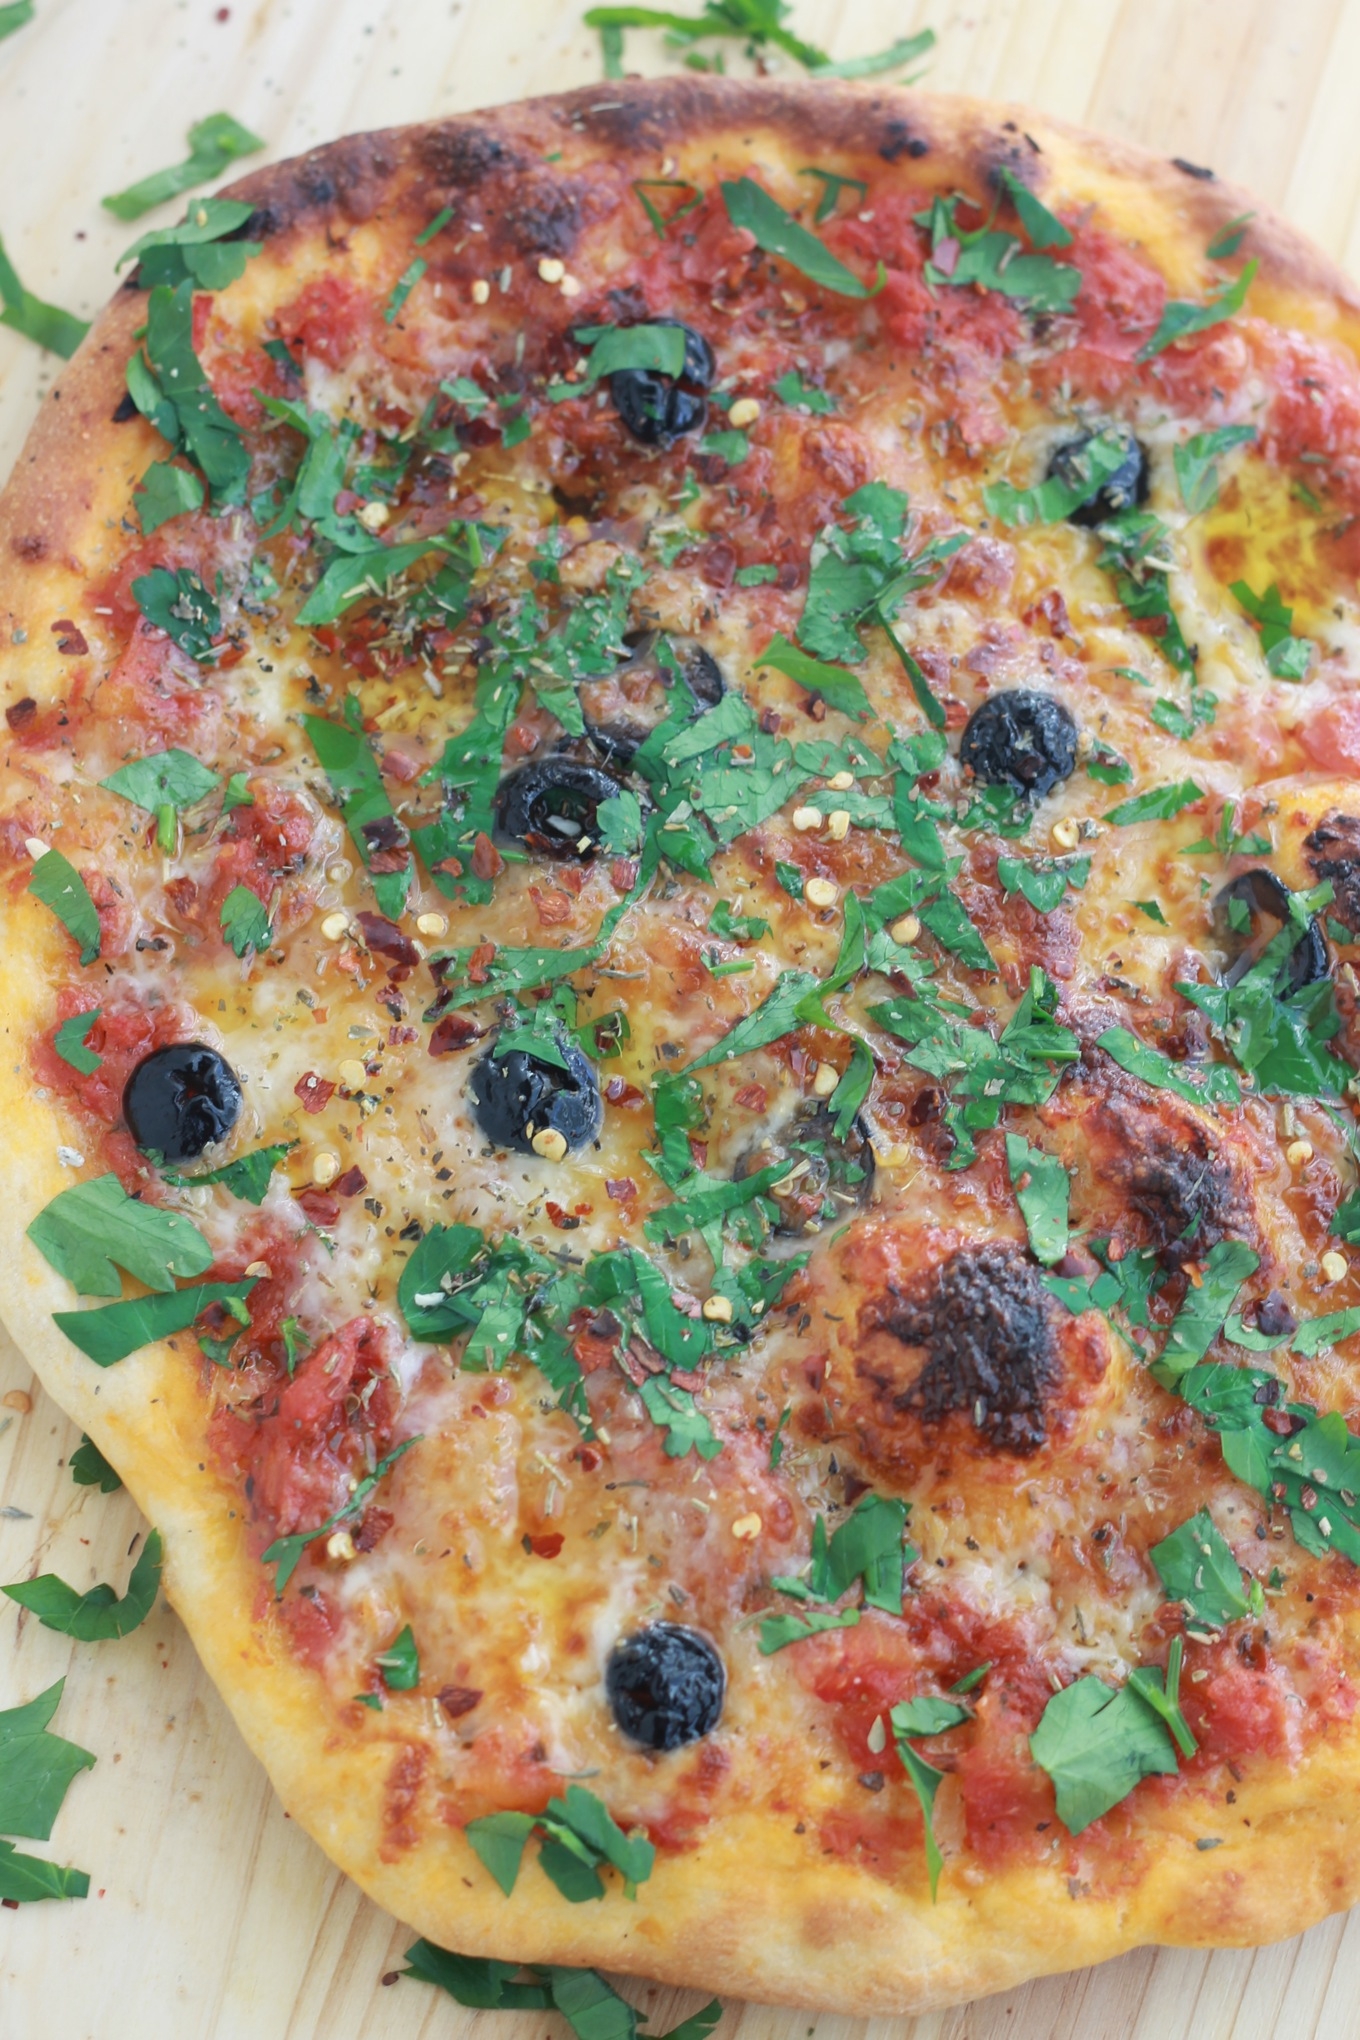 Recette de la pizza à la mozzarella et olives, délicieuse et très simple. Super rapide si vous préparez votre pâte à pizza et votre sauce tomate à l'avance.